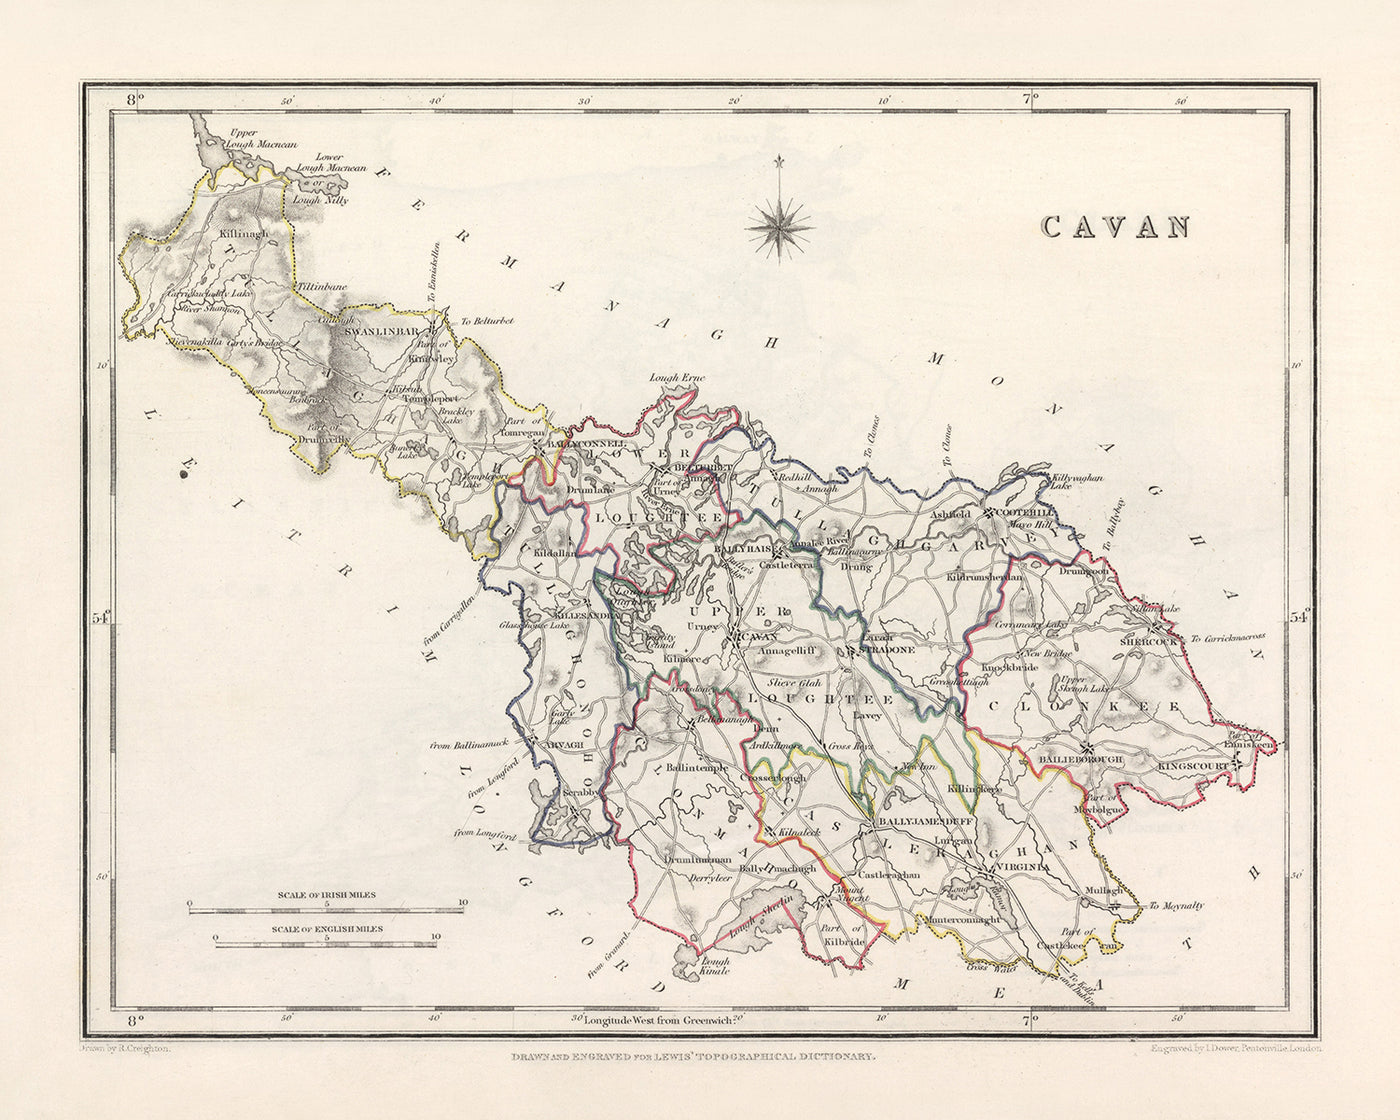 Alte Karte der Grafschaft Cavan von Samuel Lewis, 1844: Belturbet, Cootehill, Bailieborough, Virginia und mehr